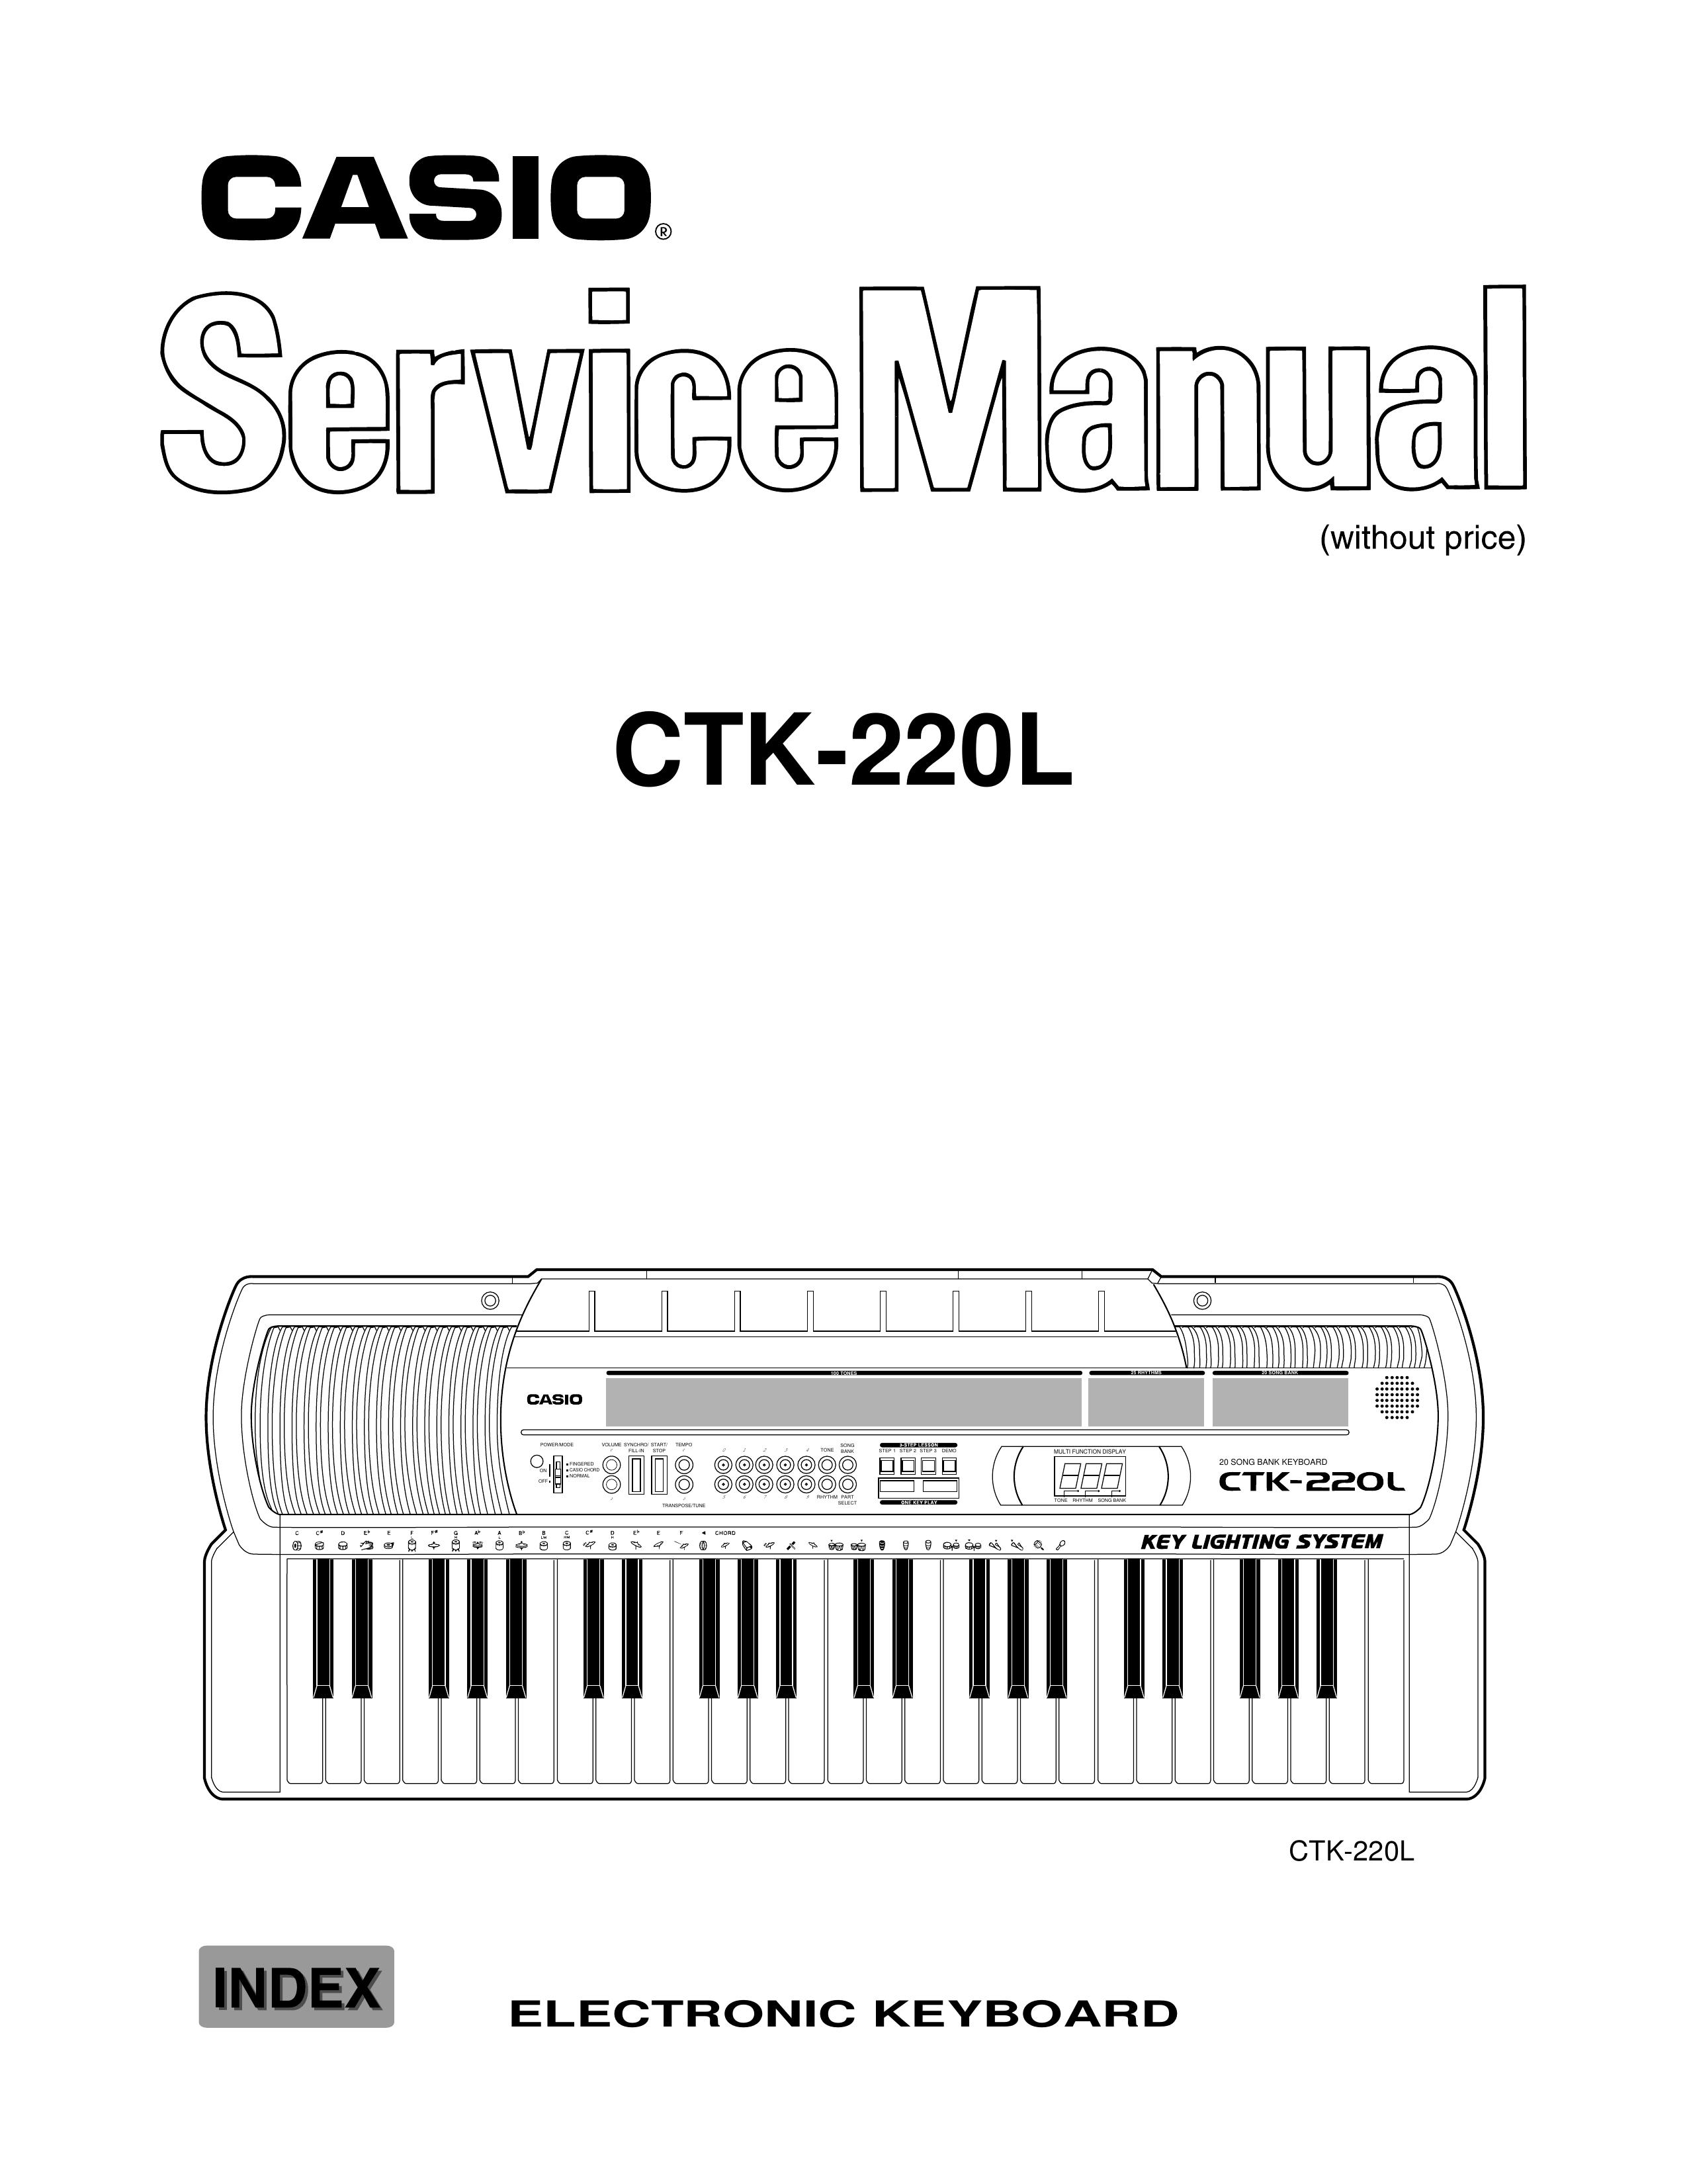 Casio CTK-220L Electronic Keyboard User Manual